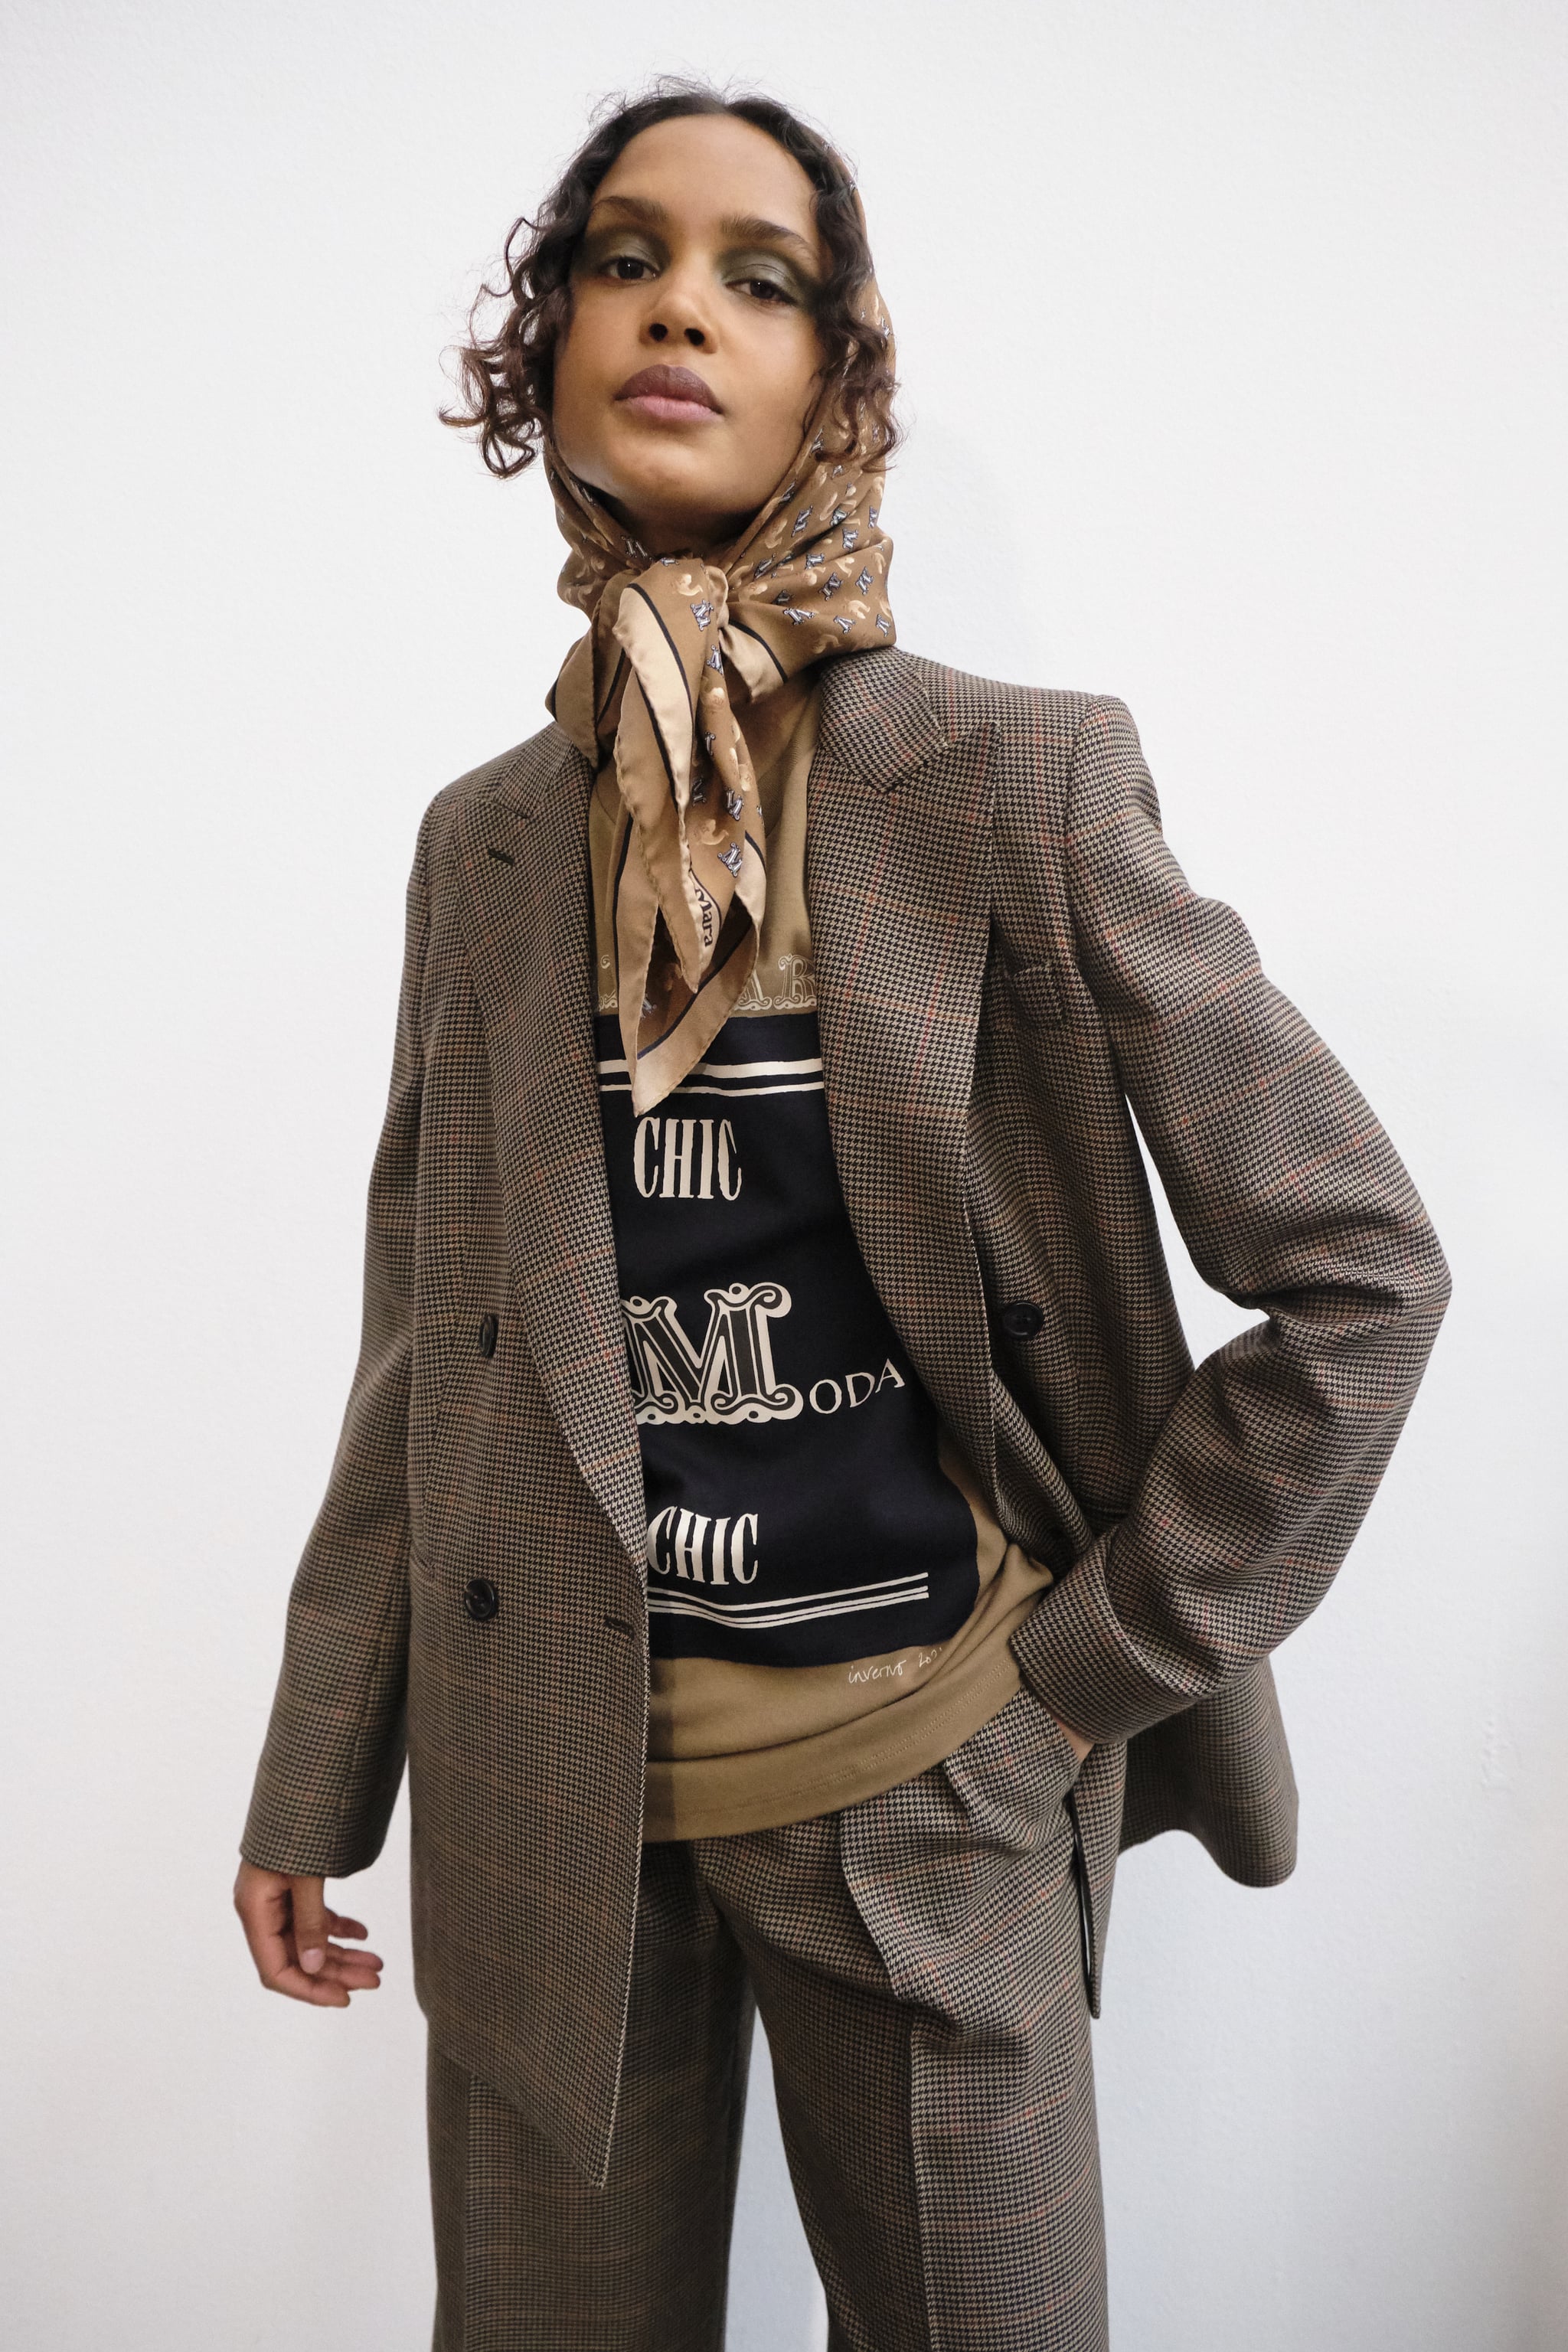 Louis Vuitton Scarf  Outfits with scarf, Fashion, Autumn fashion